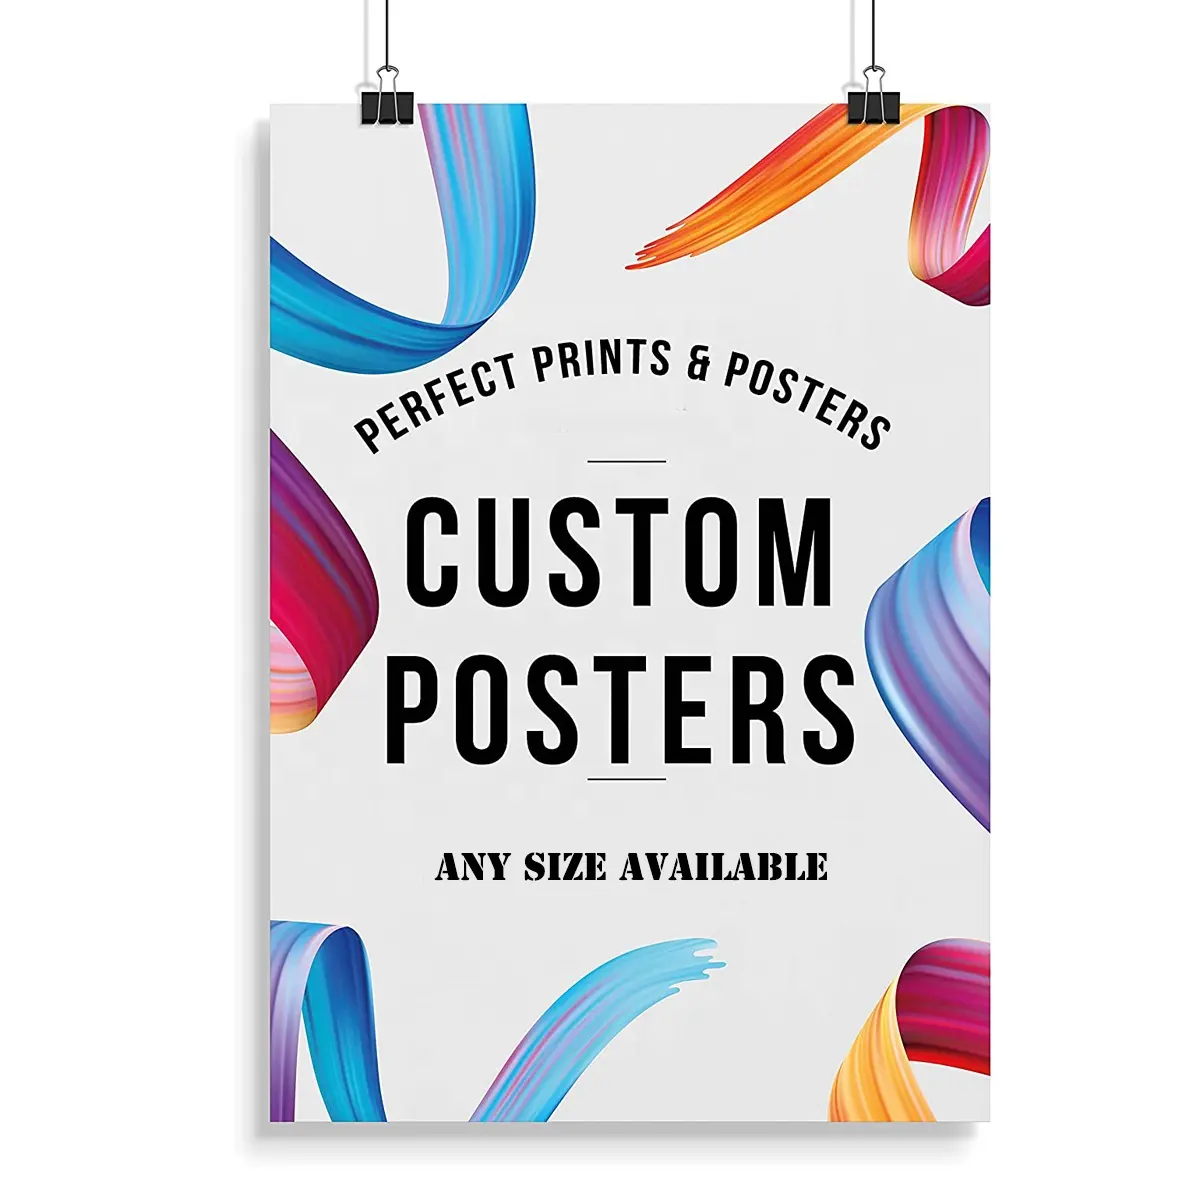 Impresión de póster de pared para fotografía y artistas, lienzo o papel, imagen personalizada